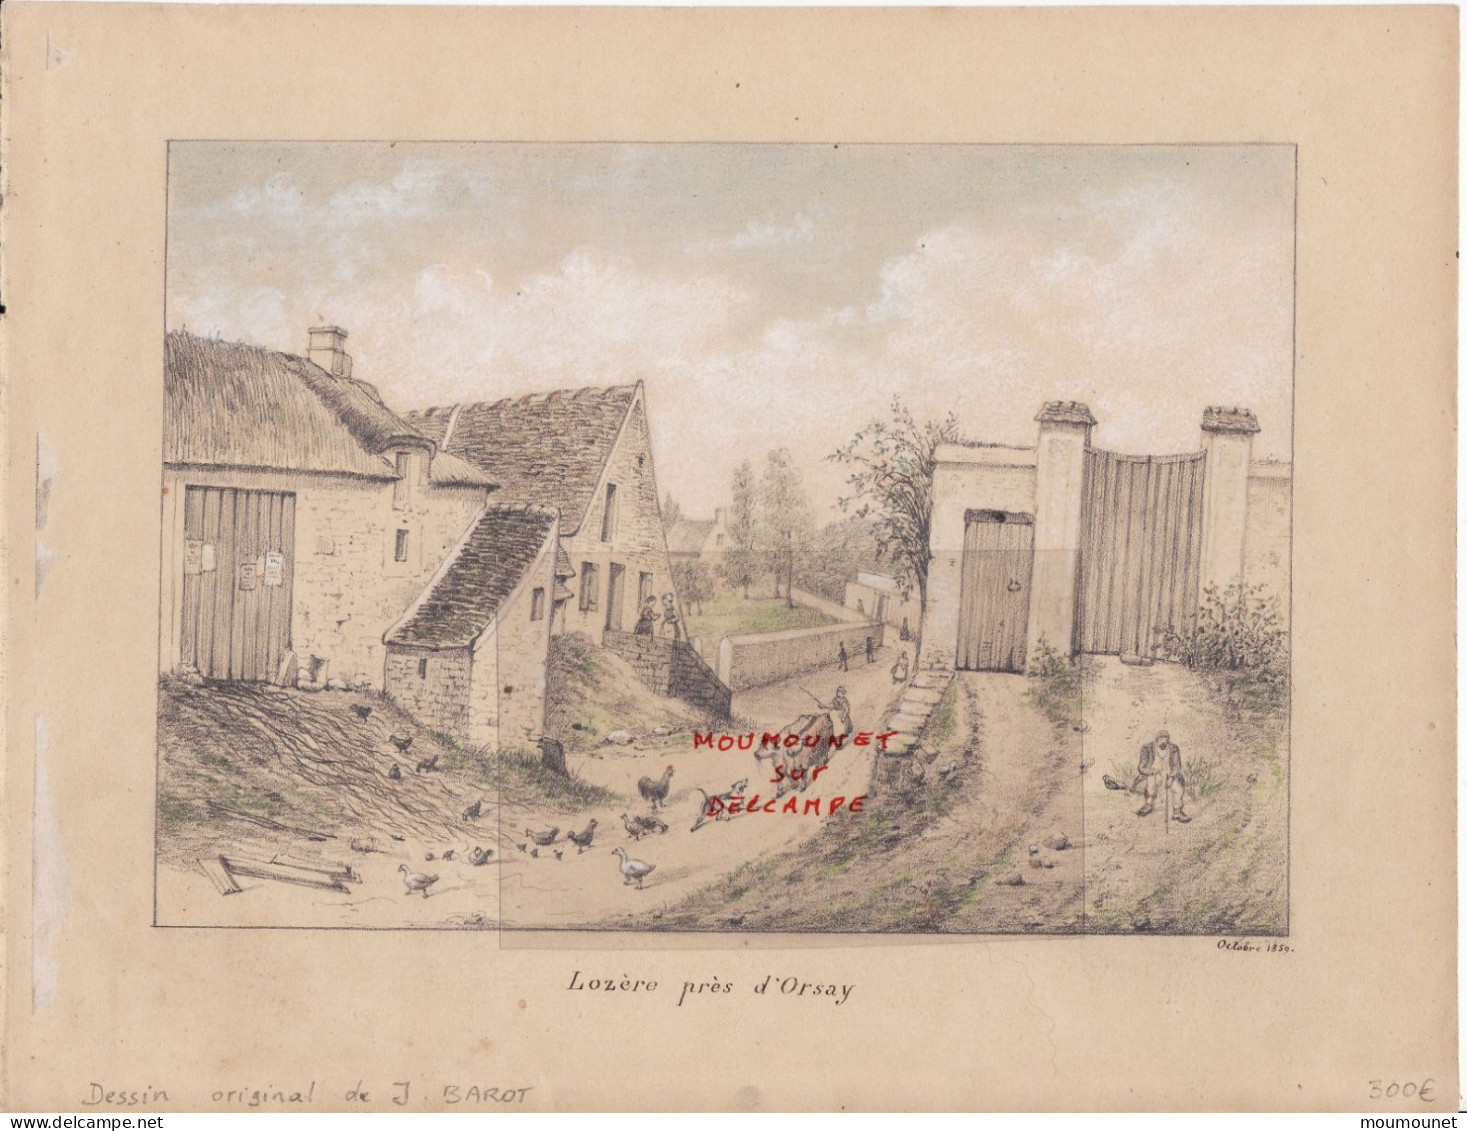 Lozère Près D'Orsay. Dessin Tité D'un Carnet De Croquis D'après Nature. Octobre 1859. - Watercolours